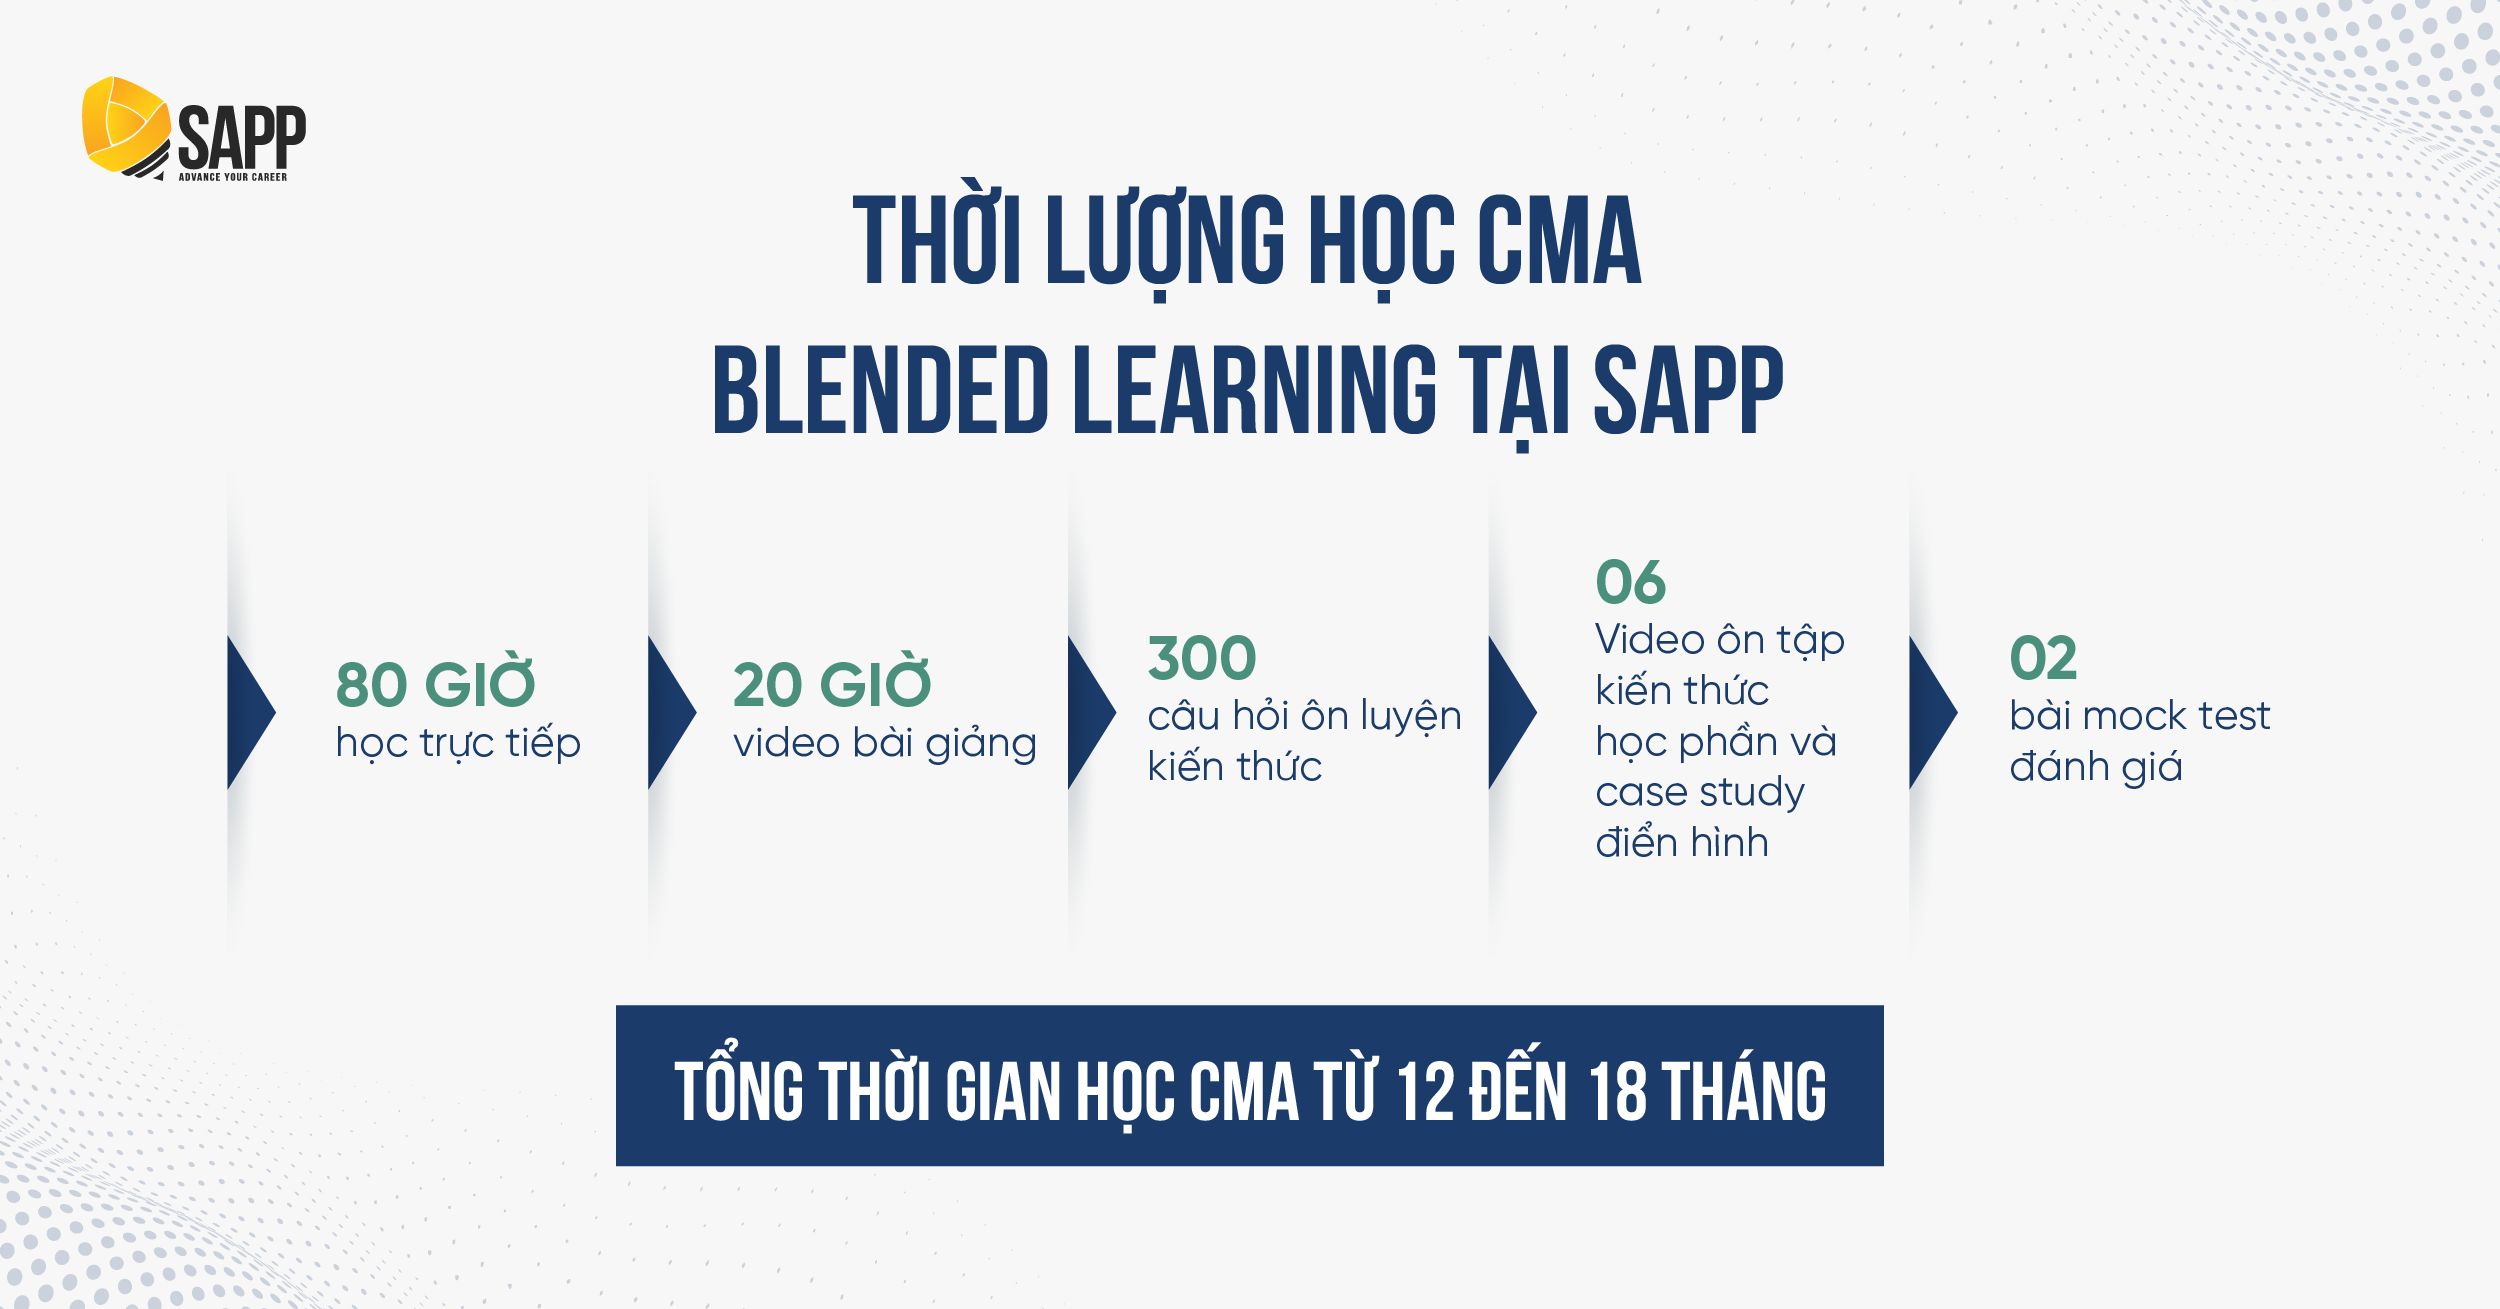 Học cma Hà Nội - Thời gian học CMA theo phương pháp Blended Learning tại SAPP